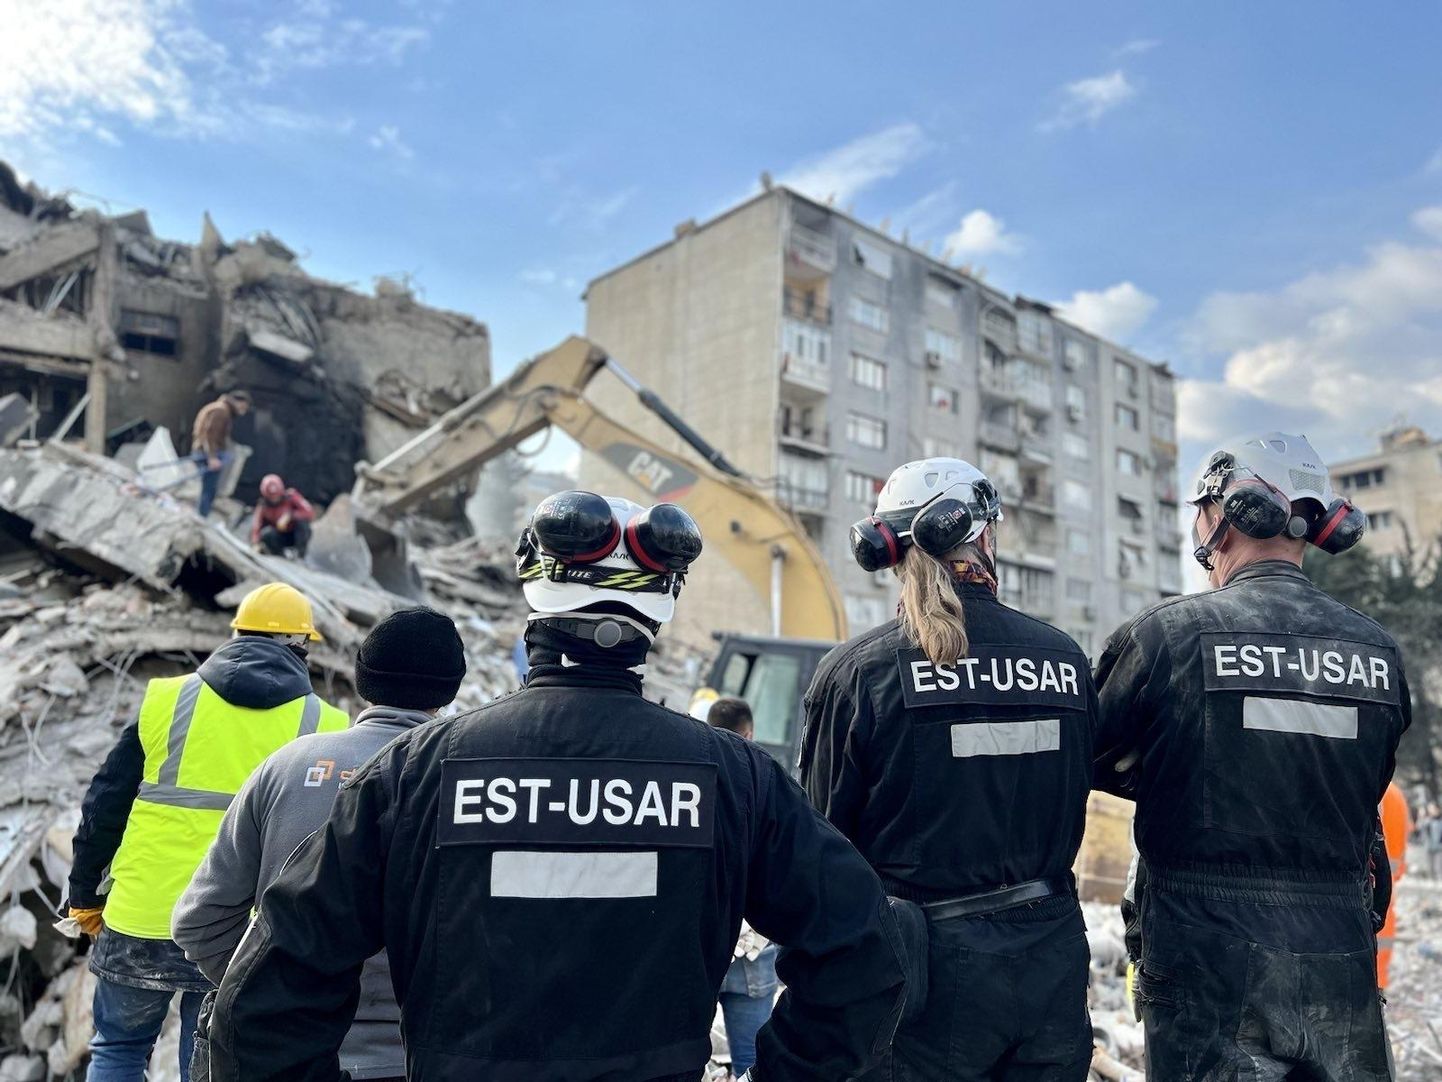 EST-USARi varingupääste meeskonna ülesanne oli leida Türgis hoonete rusude alt elusaid inimesi.